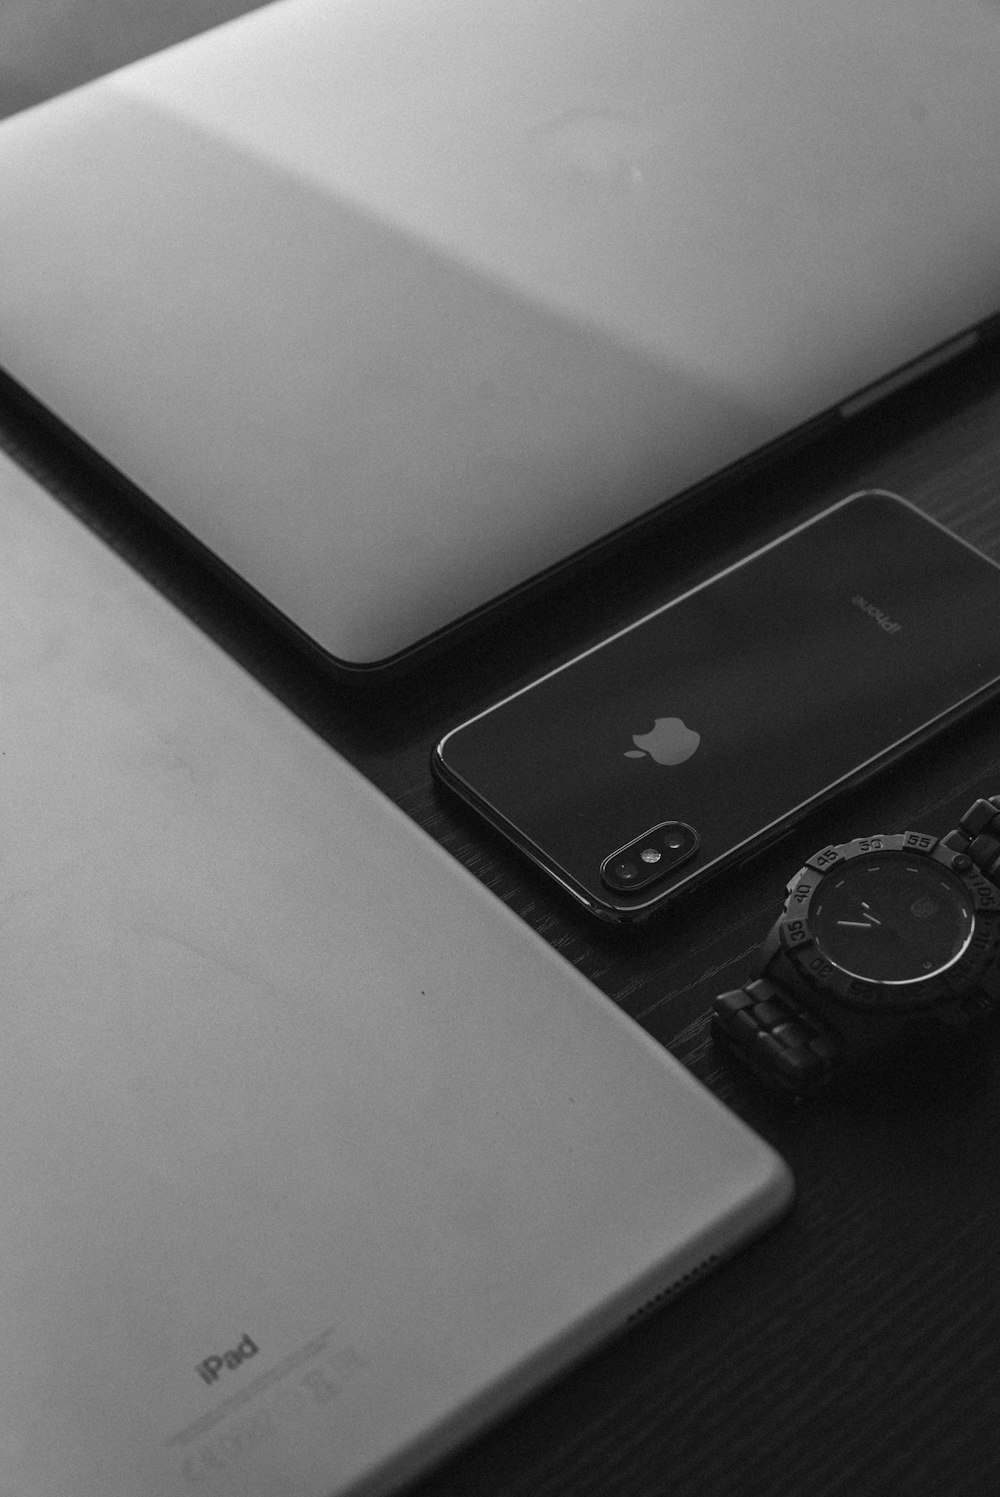 MacBook Apple argenté, iPad argenté, iPhone X gris sidéral et montre analogique noire